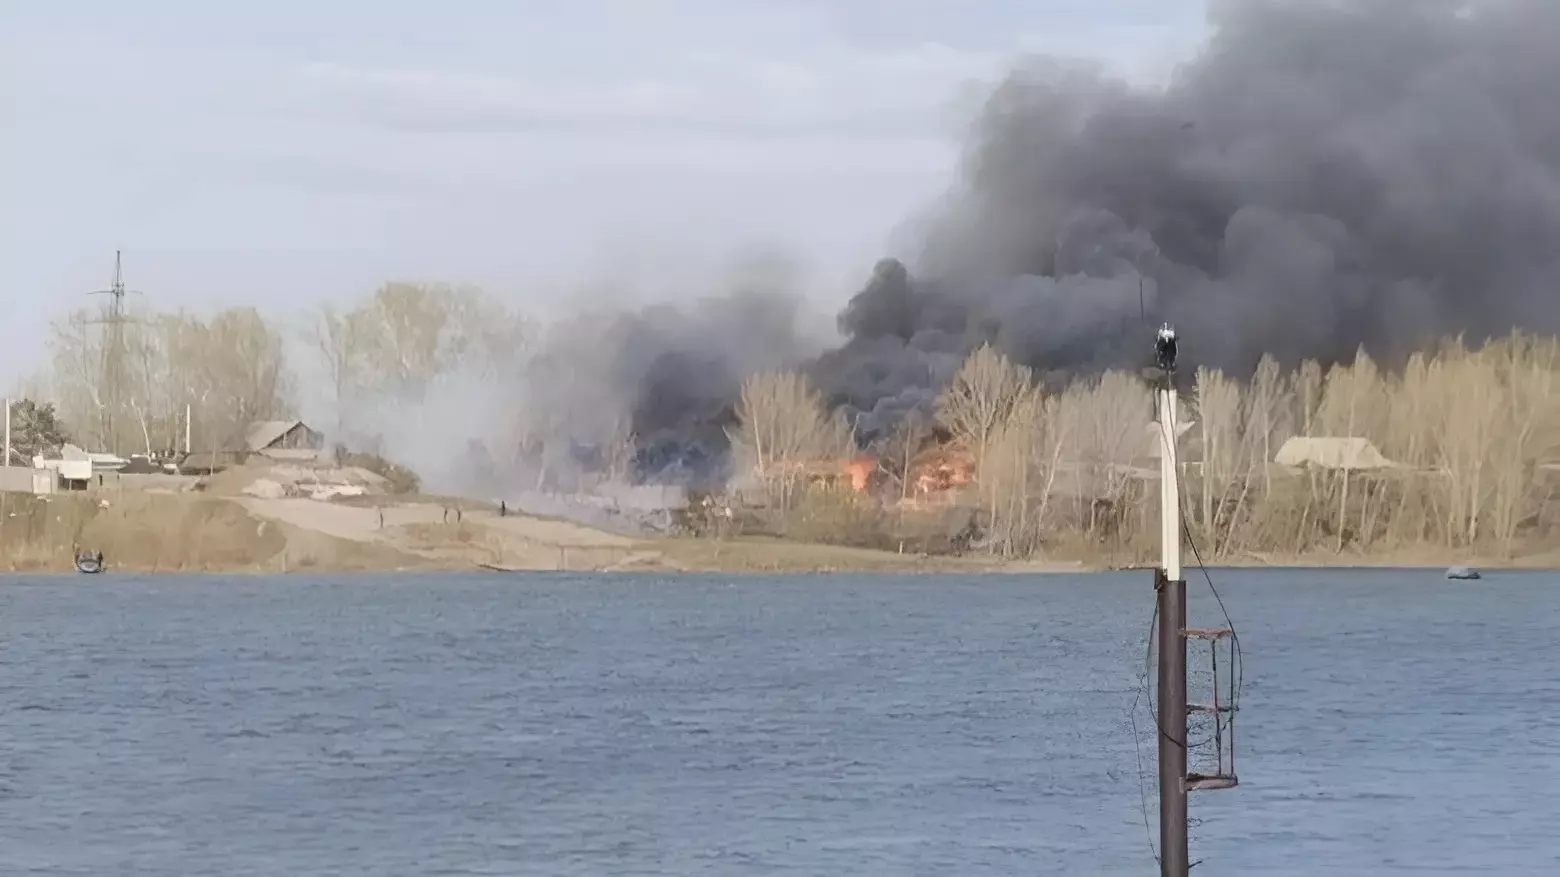 В Красноярске горят дома в Песчанке. Раздаются взрывы, ветер разносит огонь